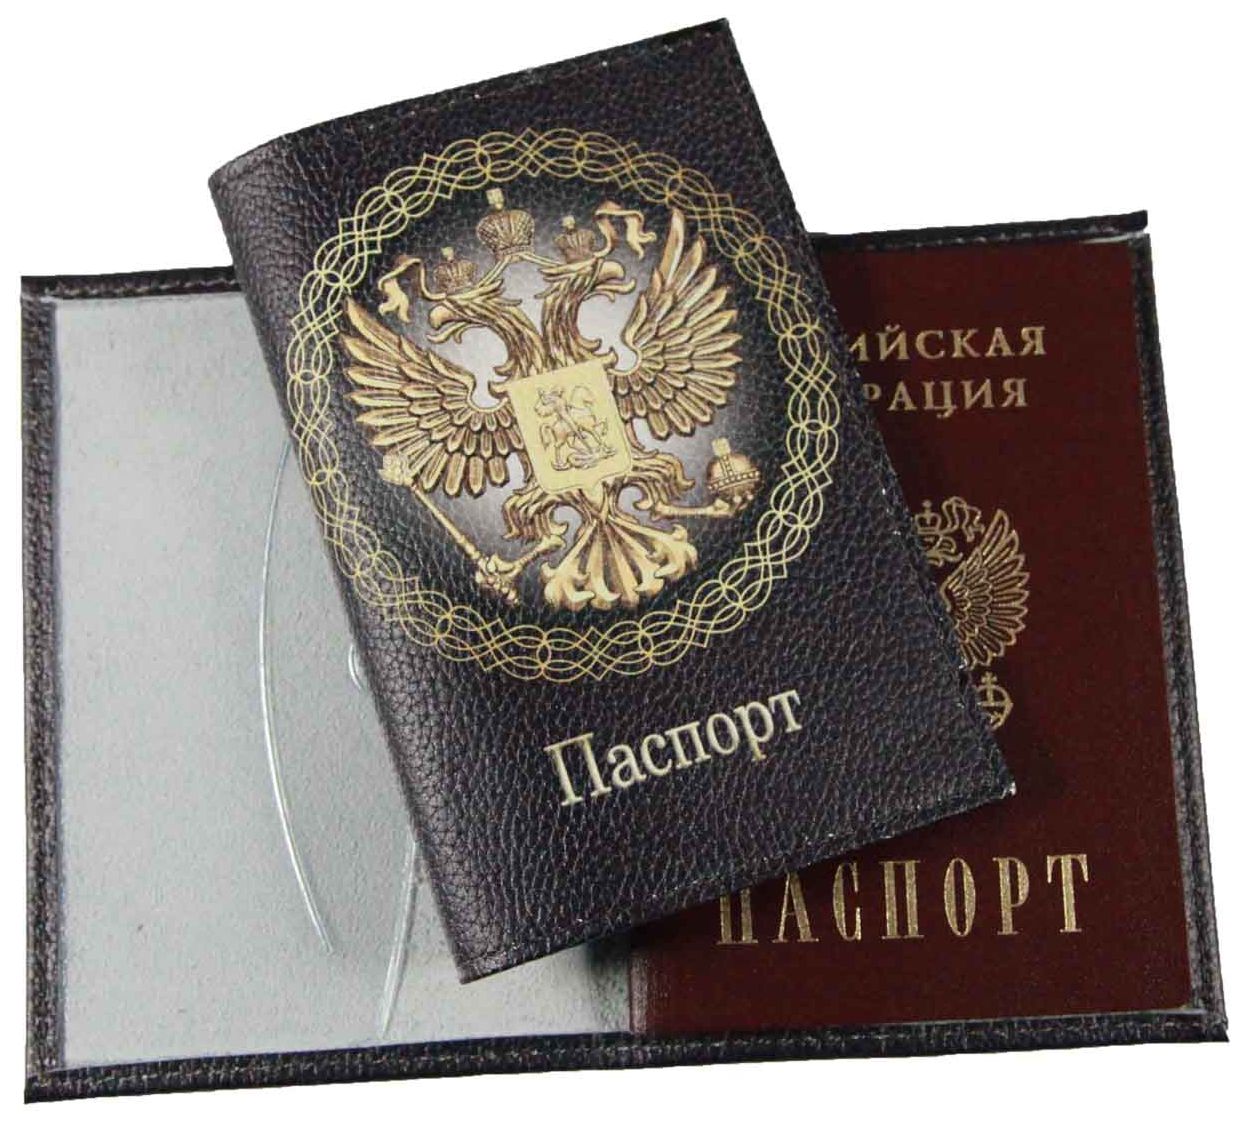 Цена: 252.00 руб. Обложка для паспорта из натуральной кожи, цветной рисунок по коже "Имперская"